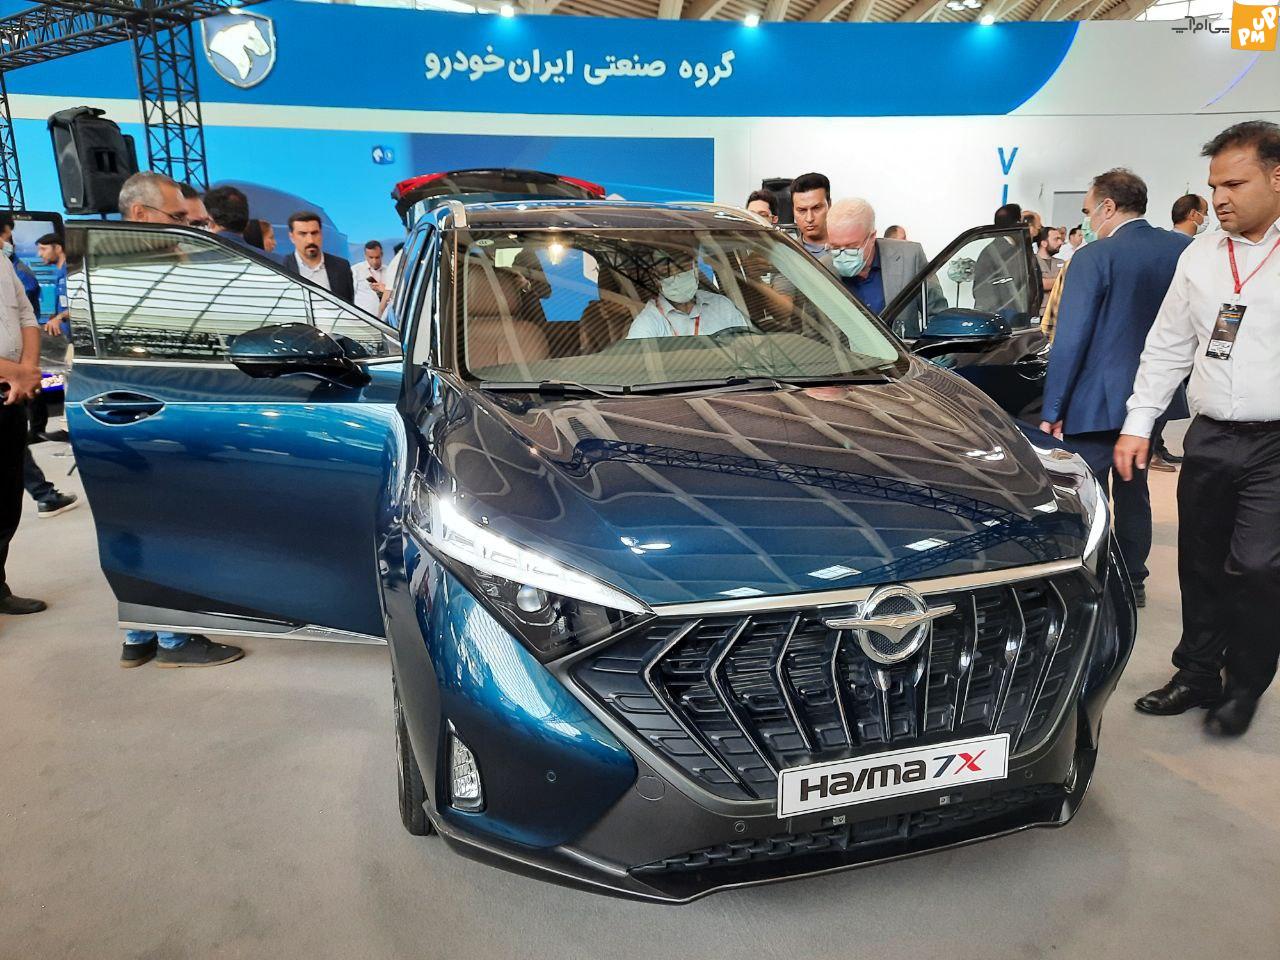 اعلام قیمت جدید محصولات ایران خودرو! / سکون قیمتی خودرو + جدول